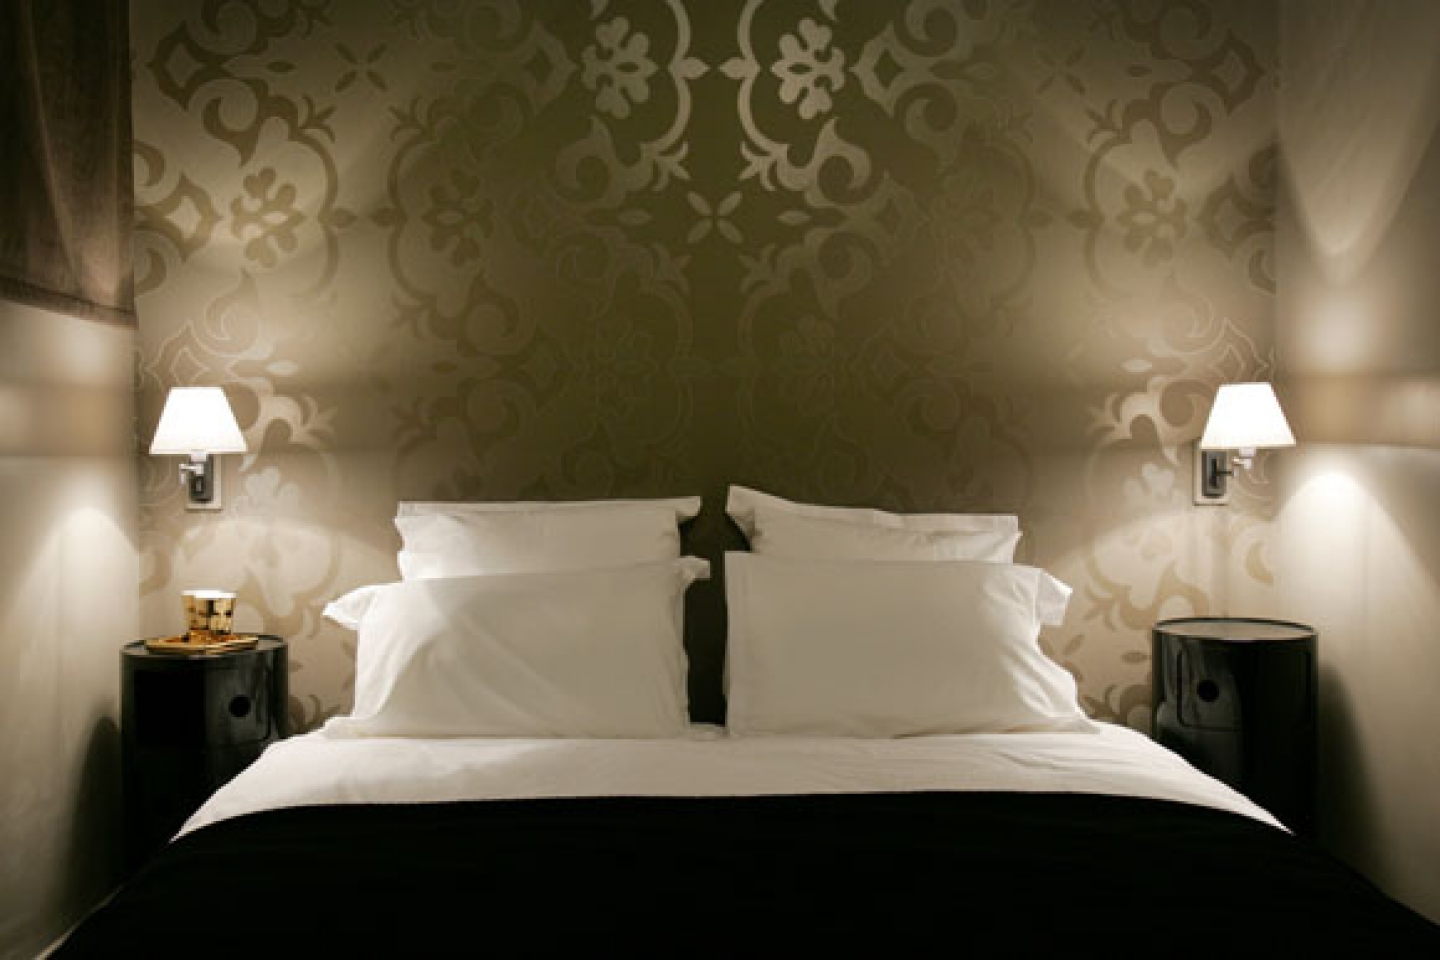  bedroom wallpaper elegant wallpaper elegant wallpaper designs elegant